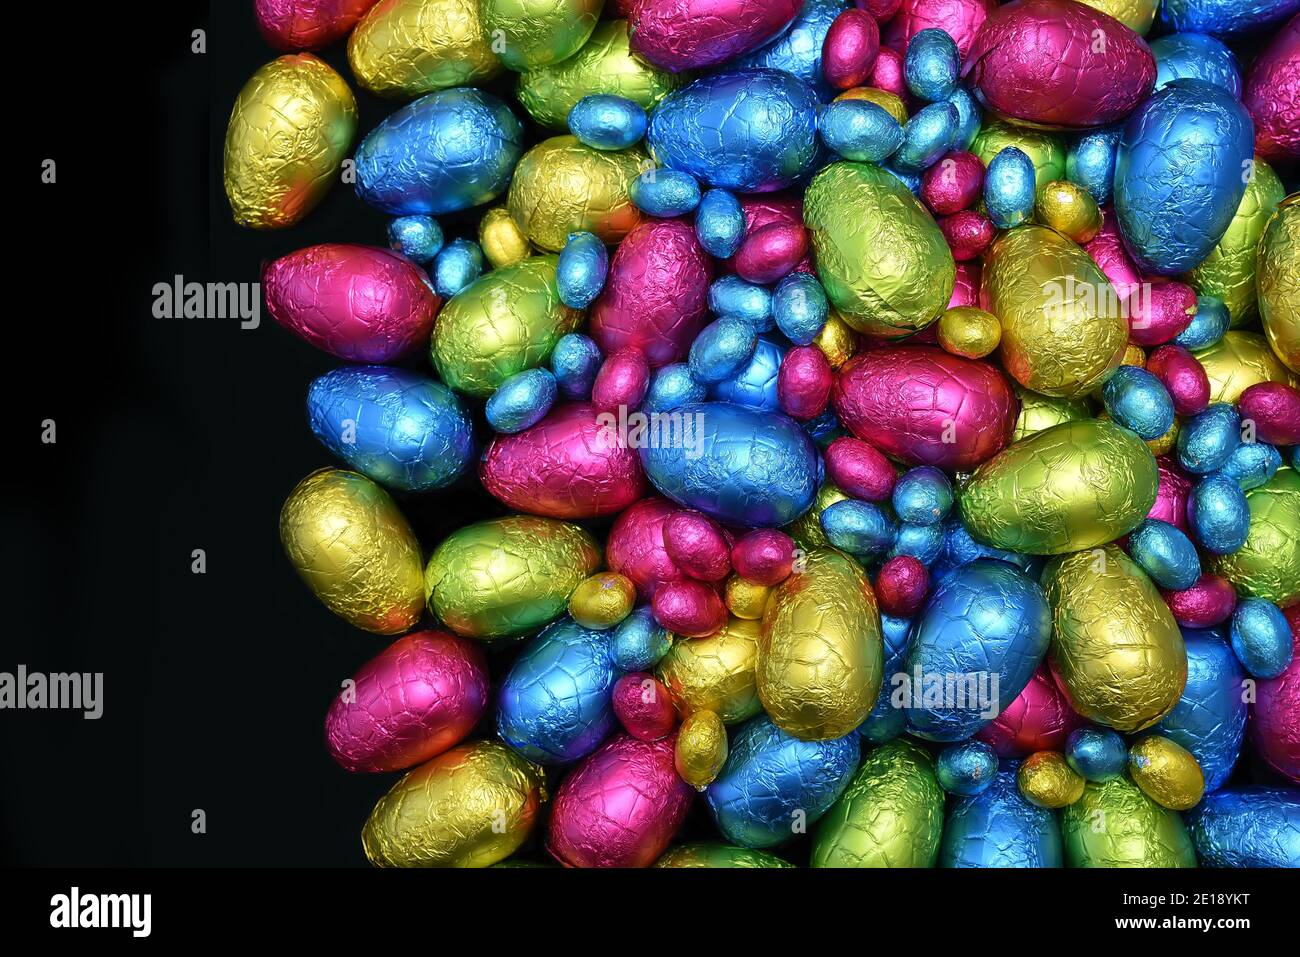 Pile ou groupe d'œufs de pâques au chocolat, de différentes tailles et de couleurs différentes, enveloppés d'une feuille de couleur, rose, bleu, jaune et vert citron, contre le noir. Banque D'Images